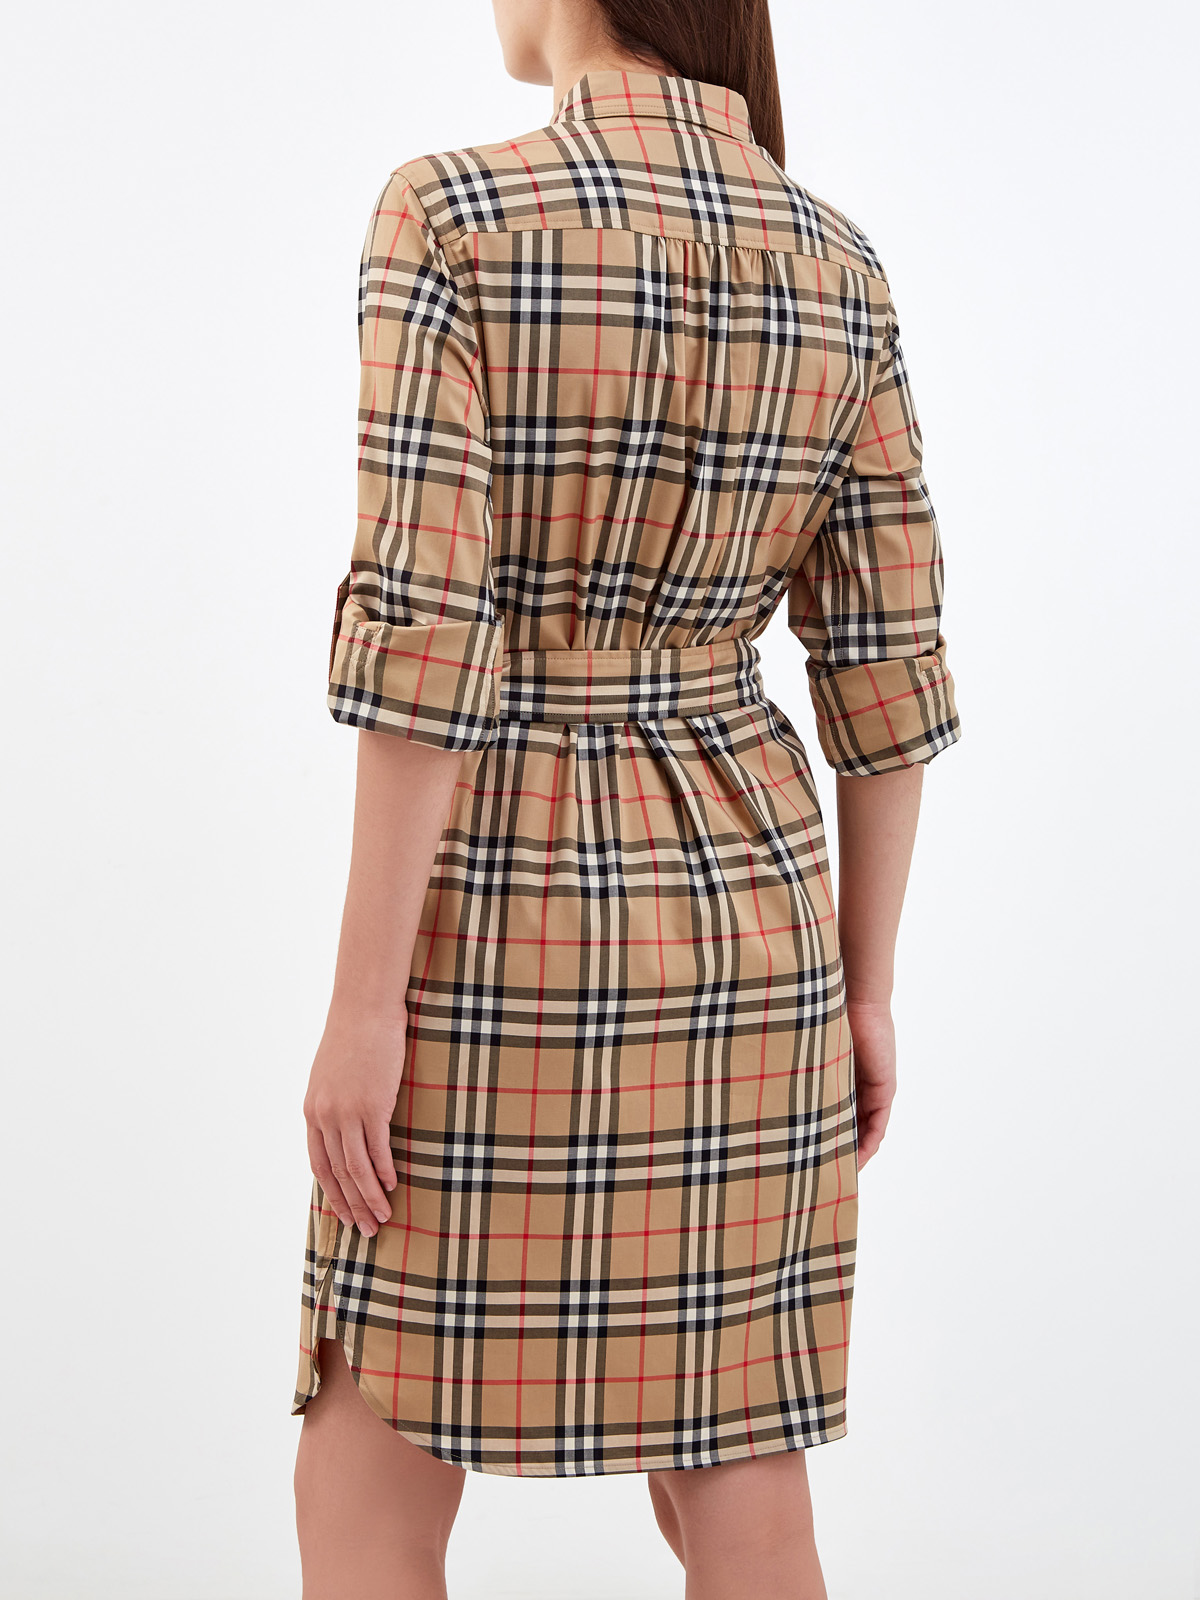 Приталенное платье-рубашка в клетку Vintage Check BURBERRY, цвет коричневый, размер S;L;XL - фото 4